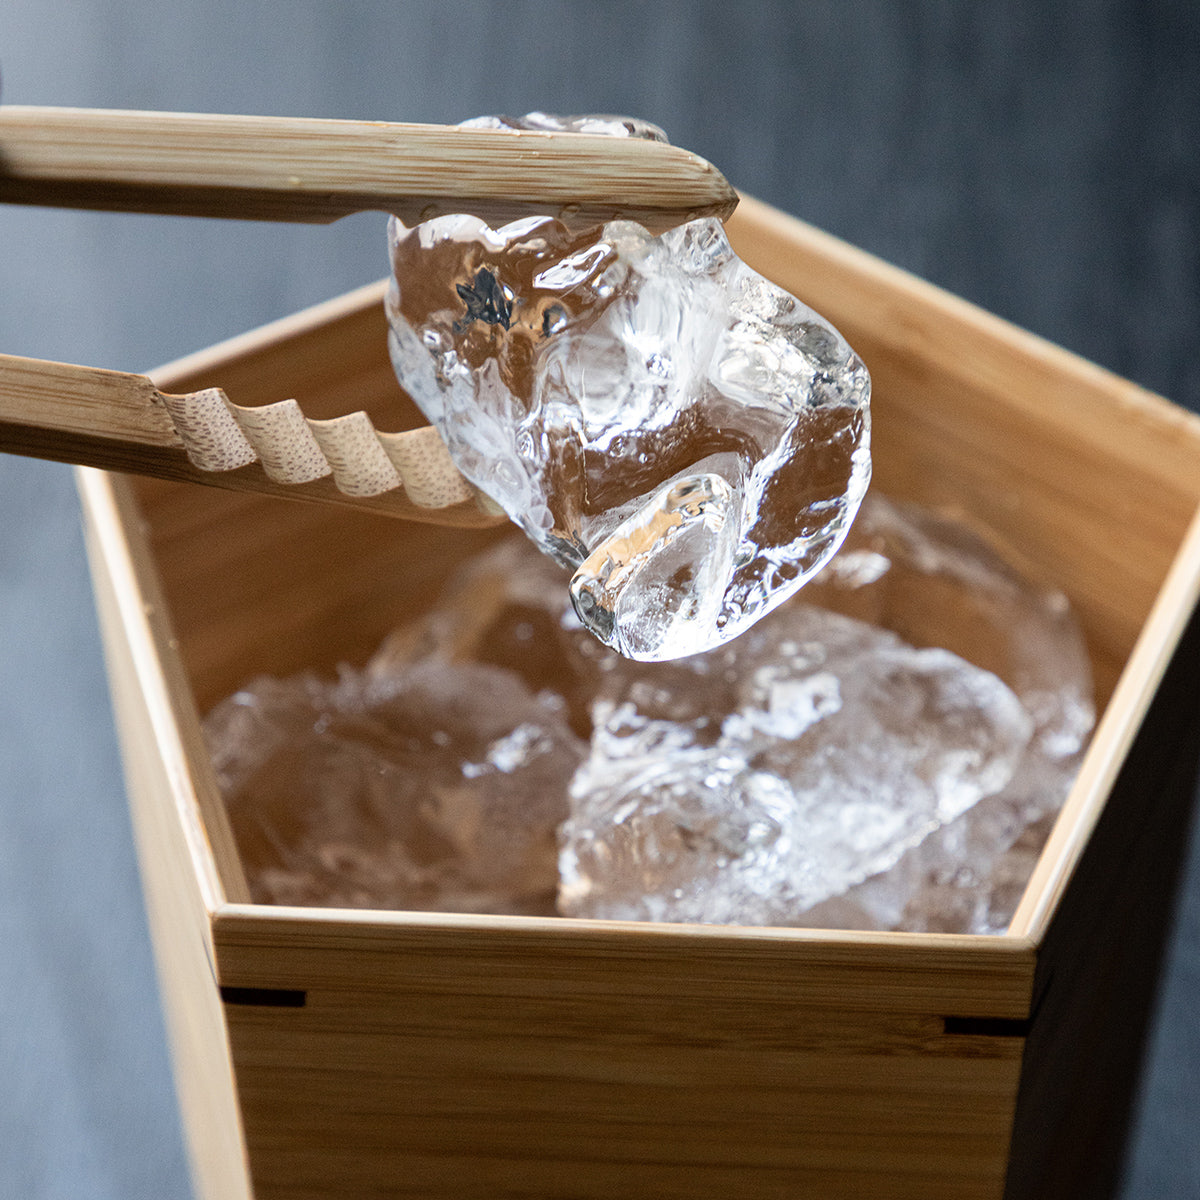 透明の氷が引き立つ<br>
竹製のアイスペール<br>